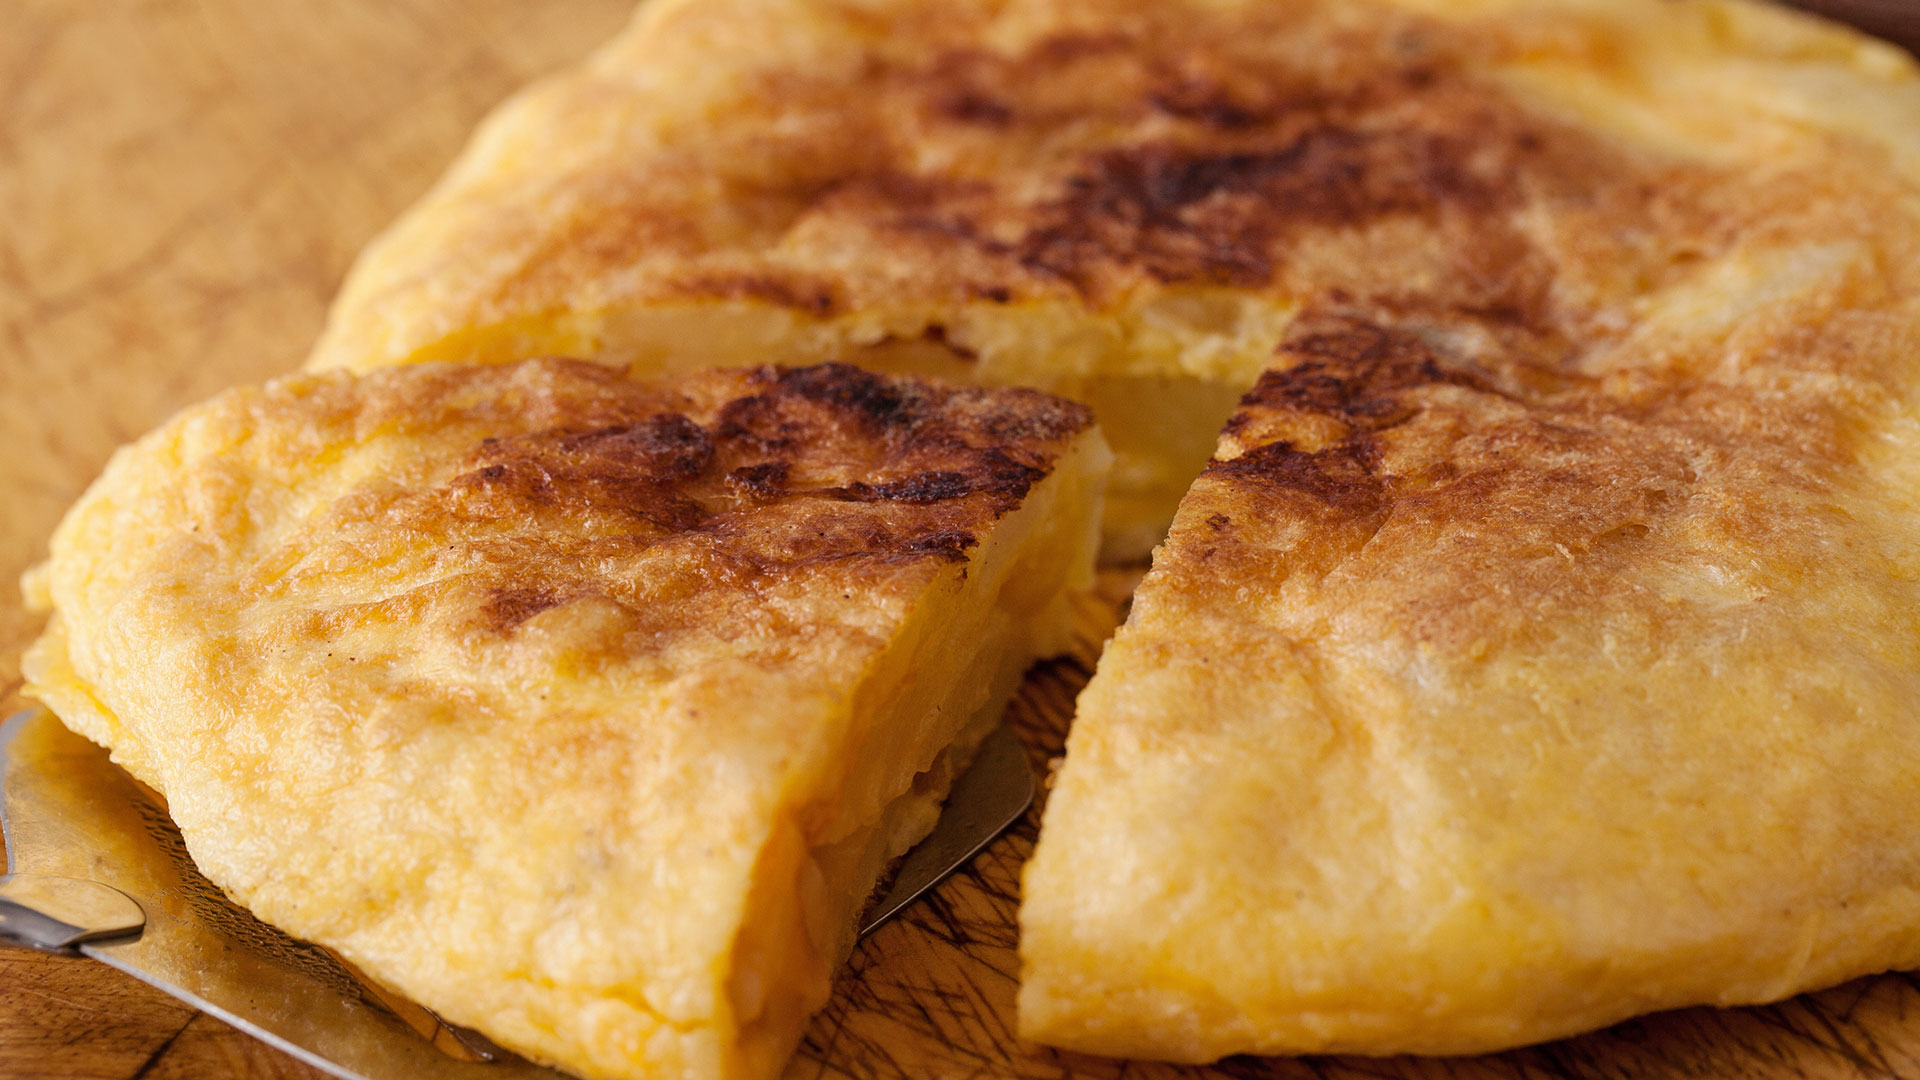 Un español prueba una tortilla de patatas en EEUU y su mezcla de sabores le desconcierta: “Nunca puede ser picante”